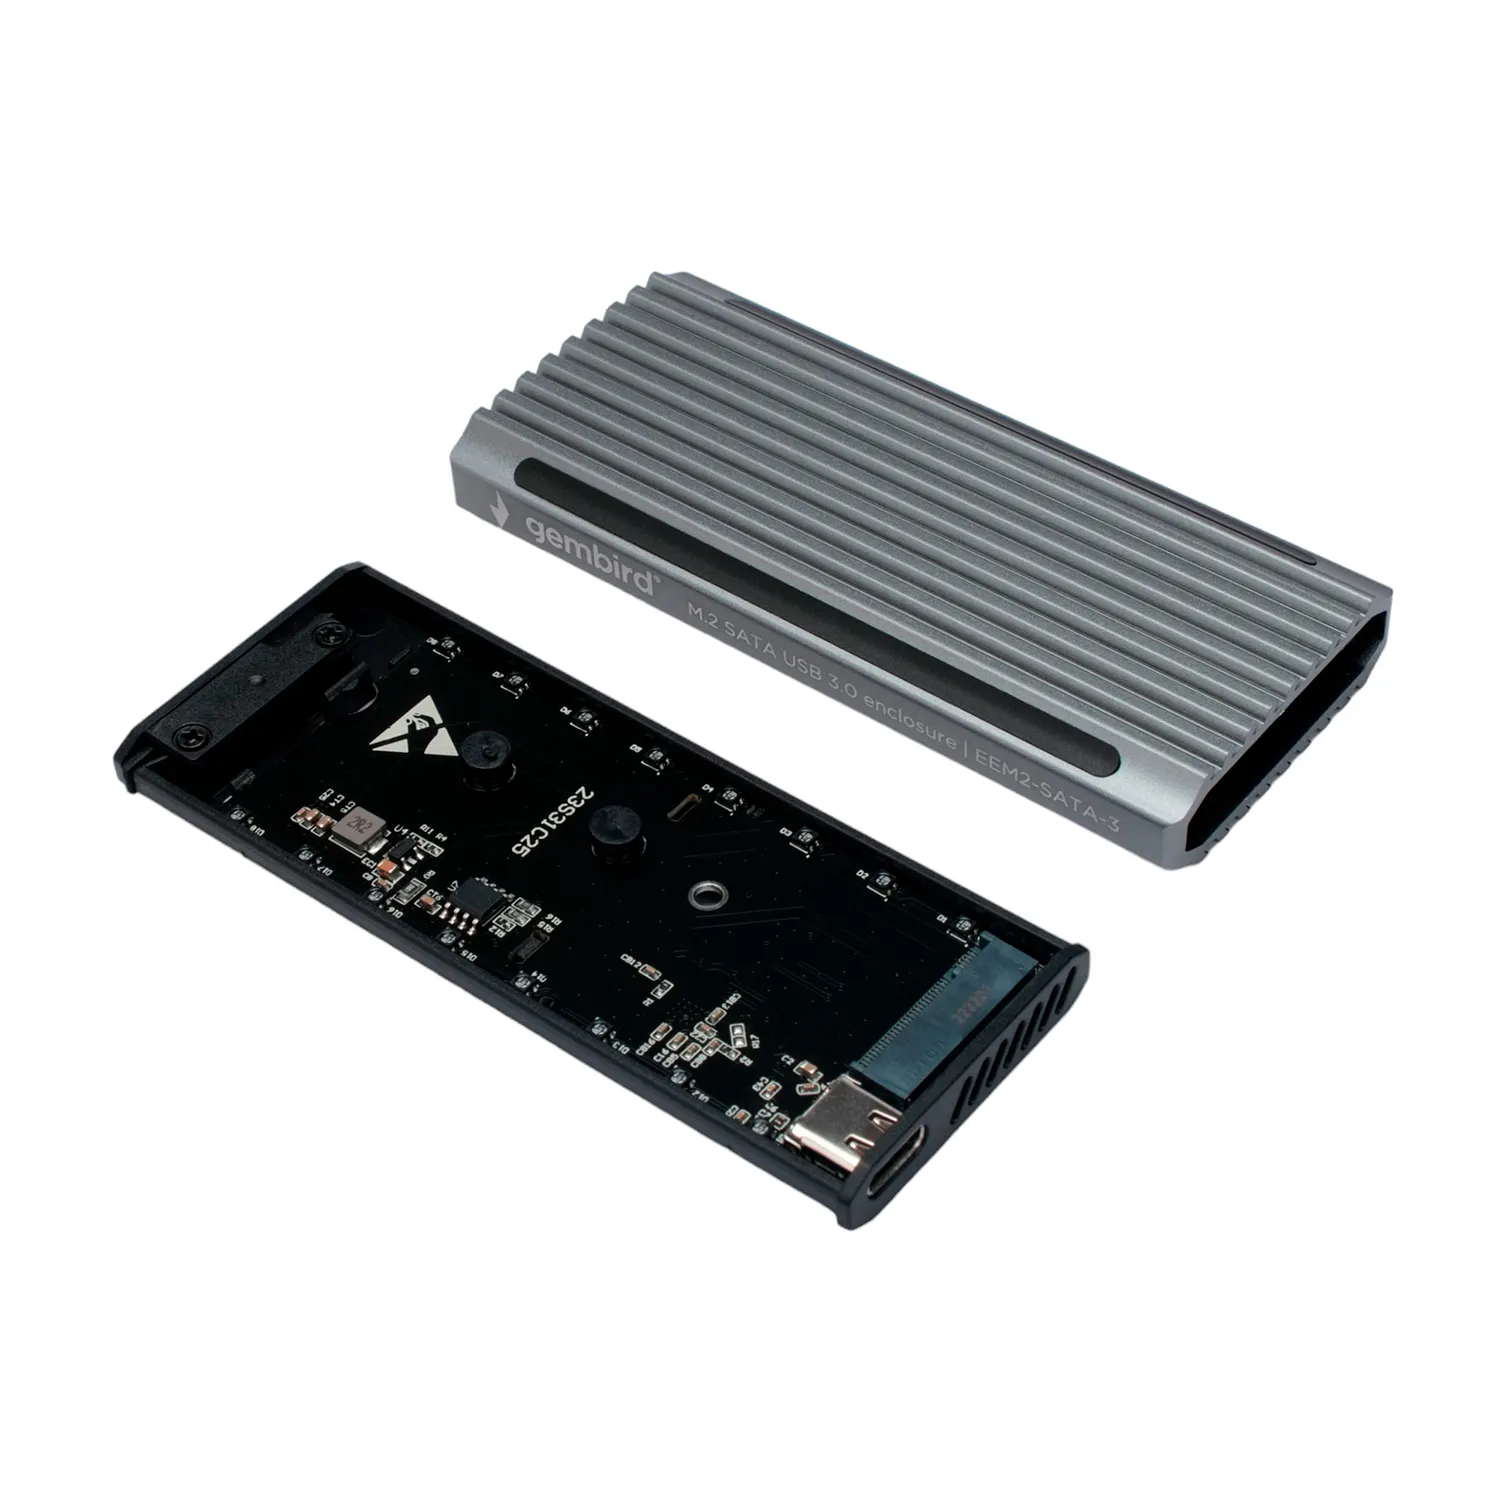 Коробка для M2" жестких дисков Gembird EEM2-SATA-3, серебристый External Case M2 to USB 3.1 Type-С, power via USB, серый